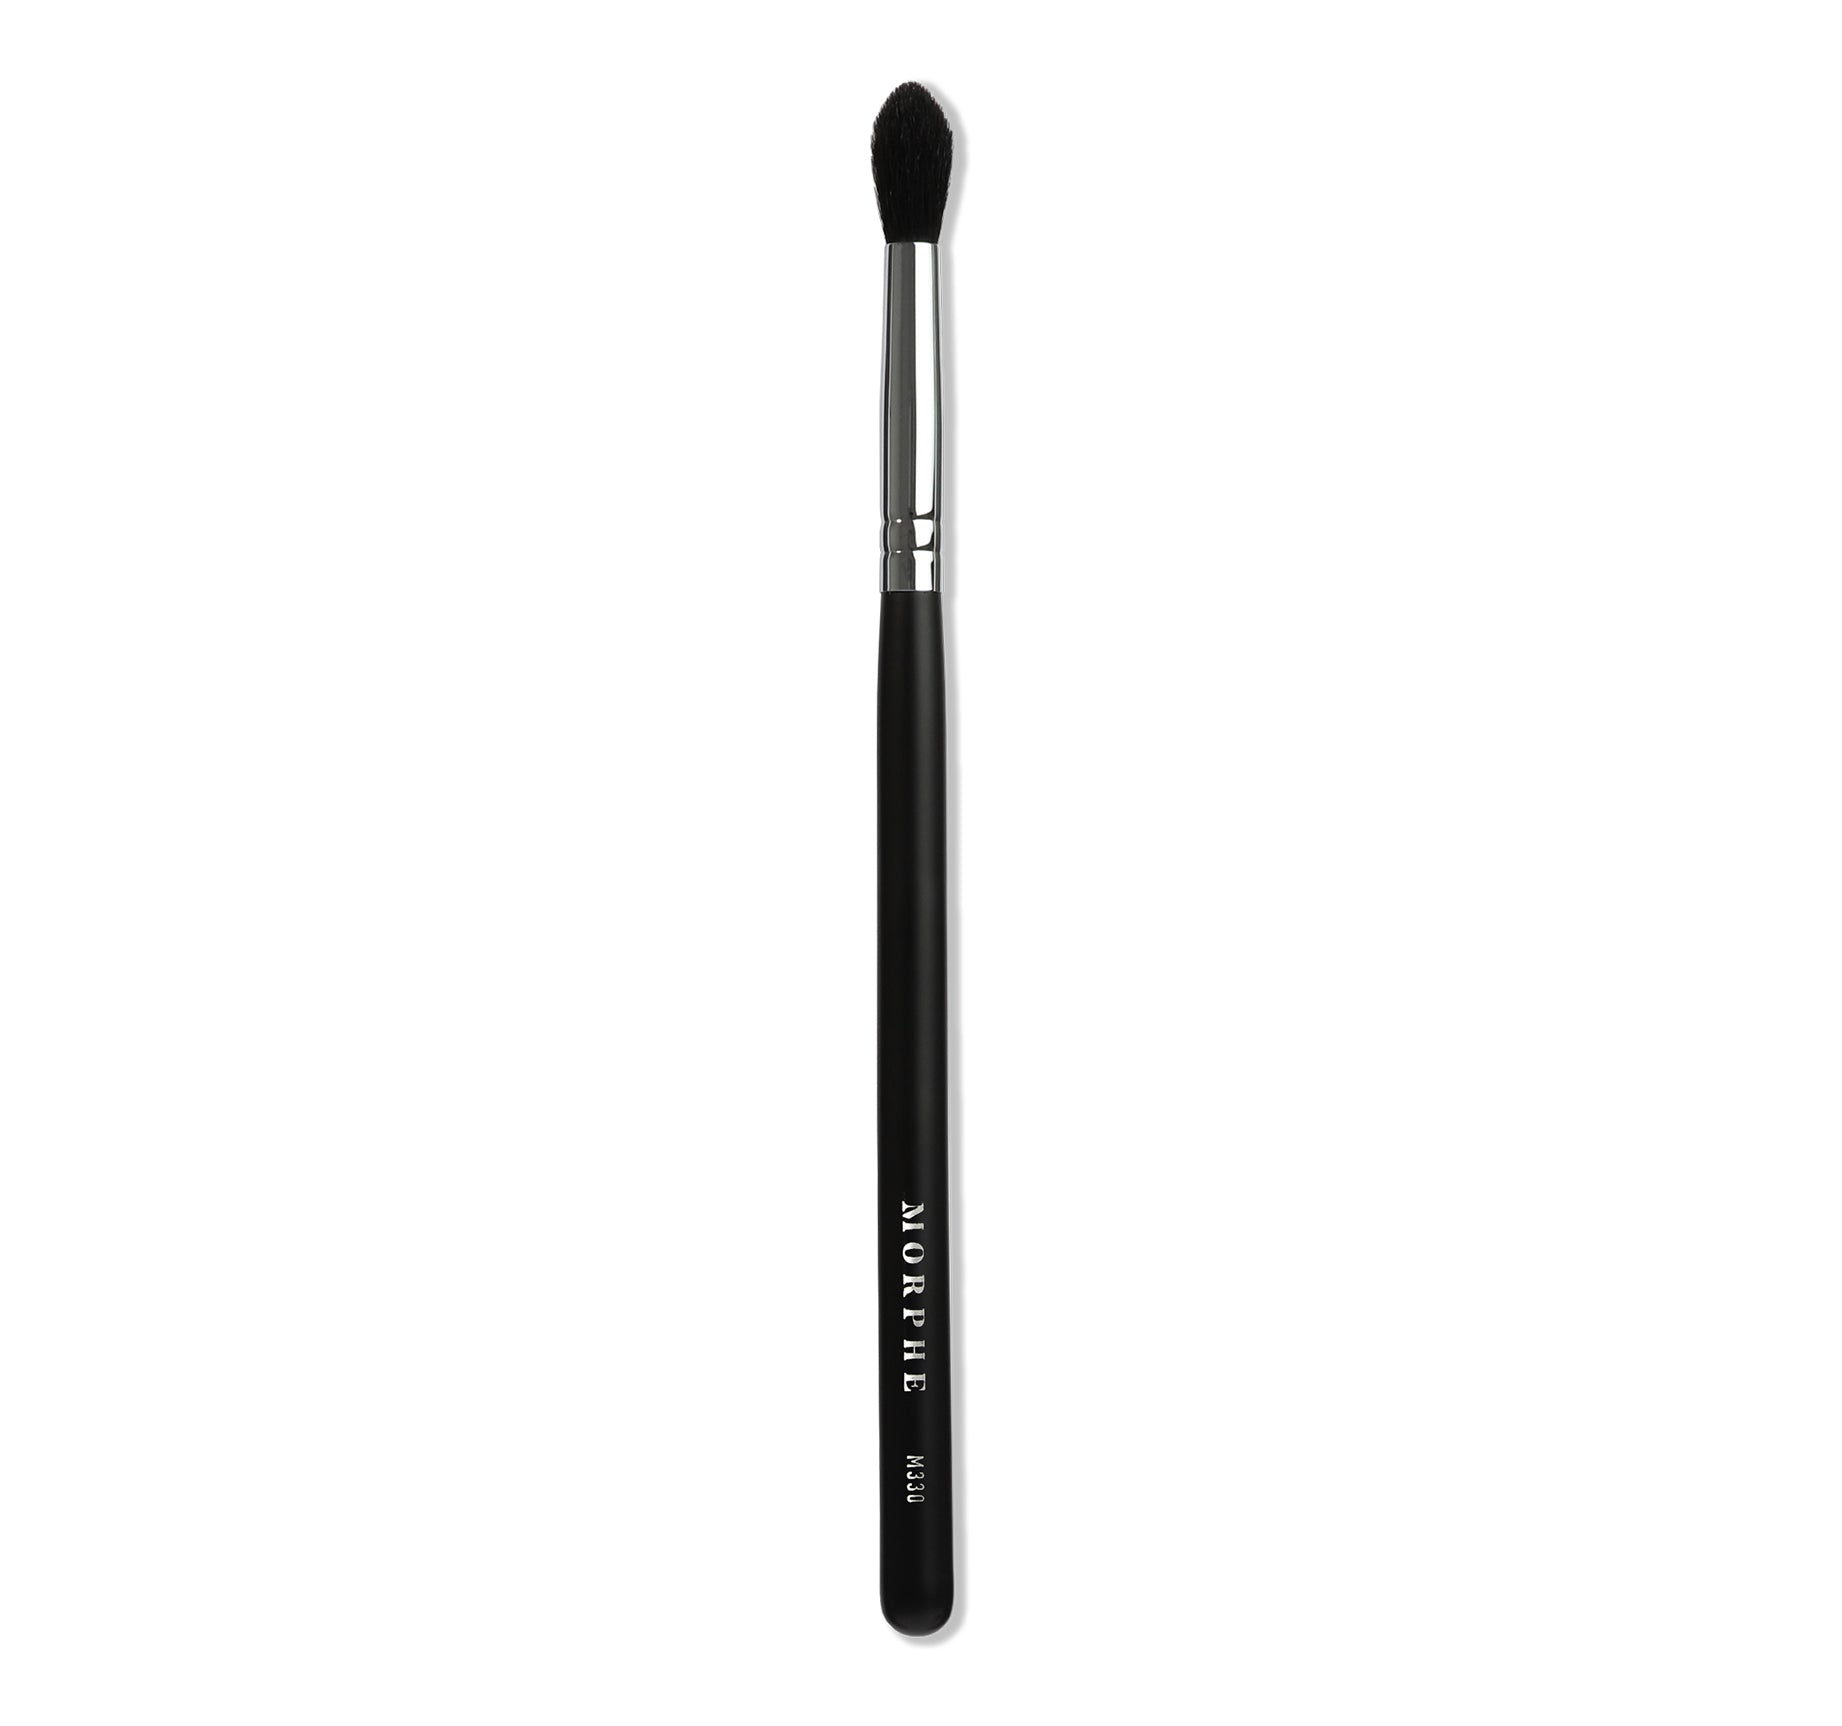 M330 Blending Crease Eyeshadow Brush - Image 1